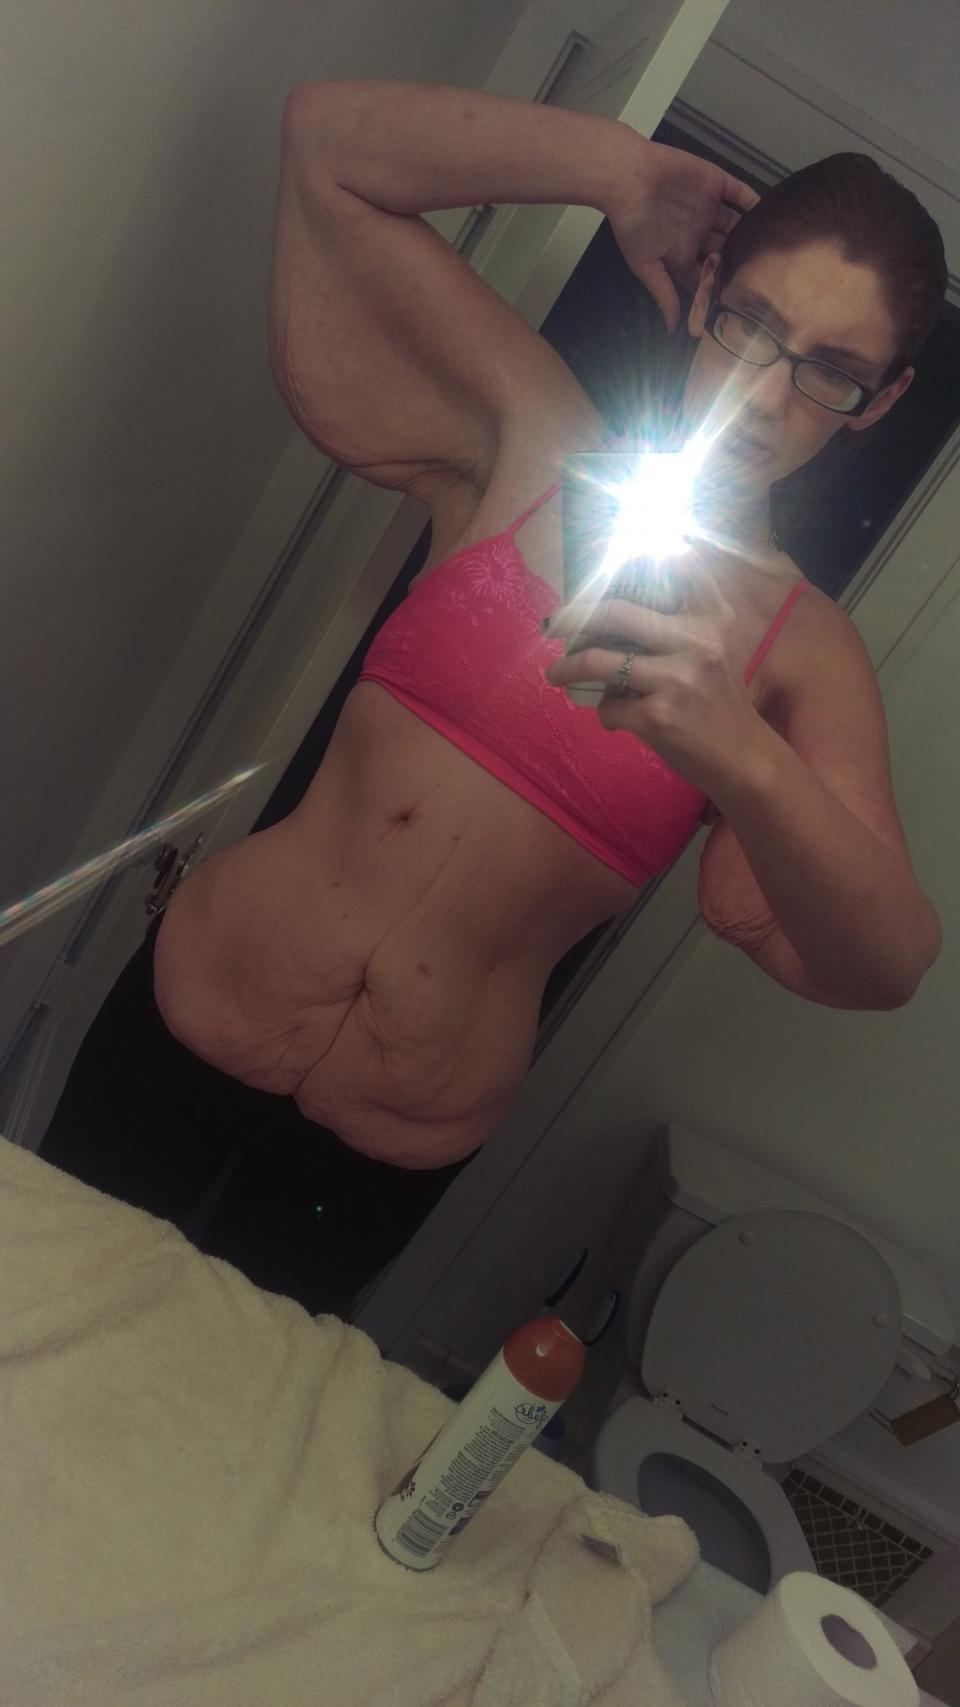 Nach der Gewichtsreduktion hatte Hallie Babcook viel überschüssige Haut am Leib. (Bild: Caters News)